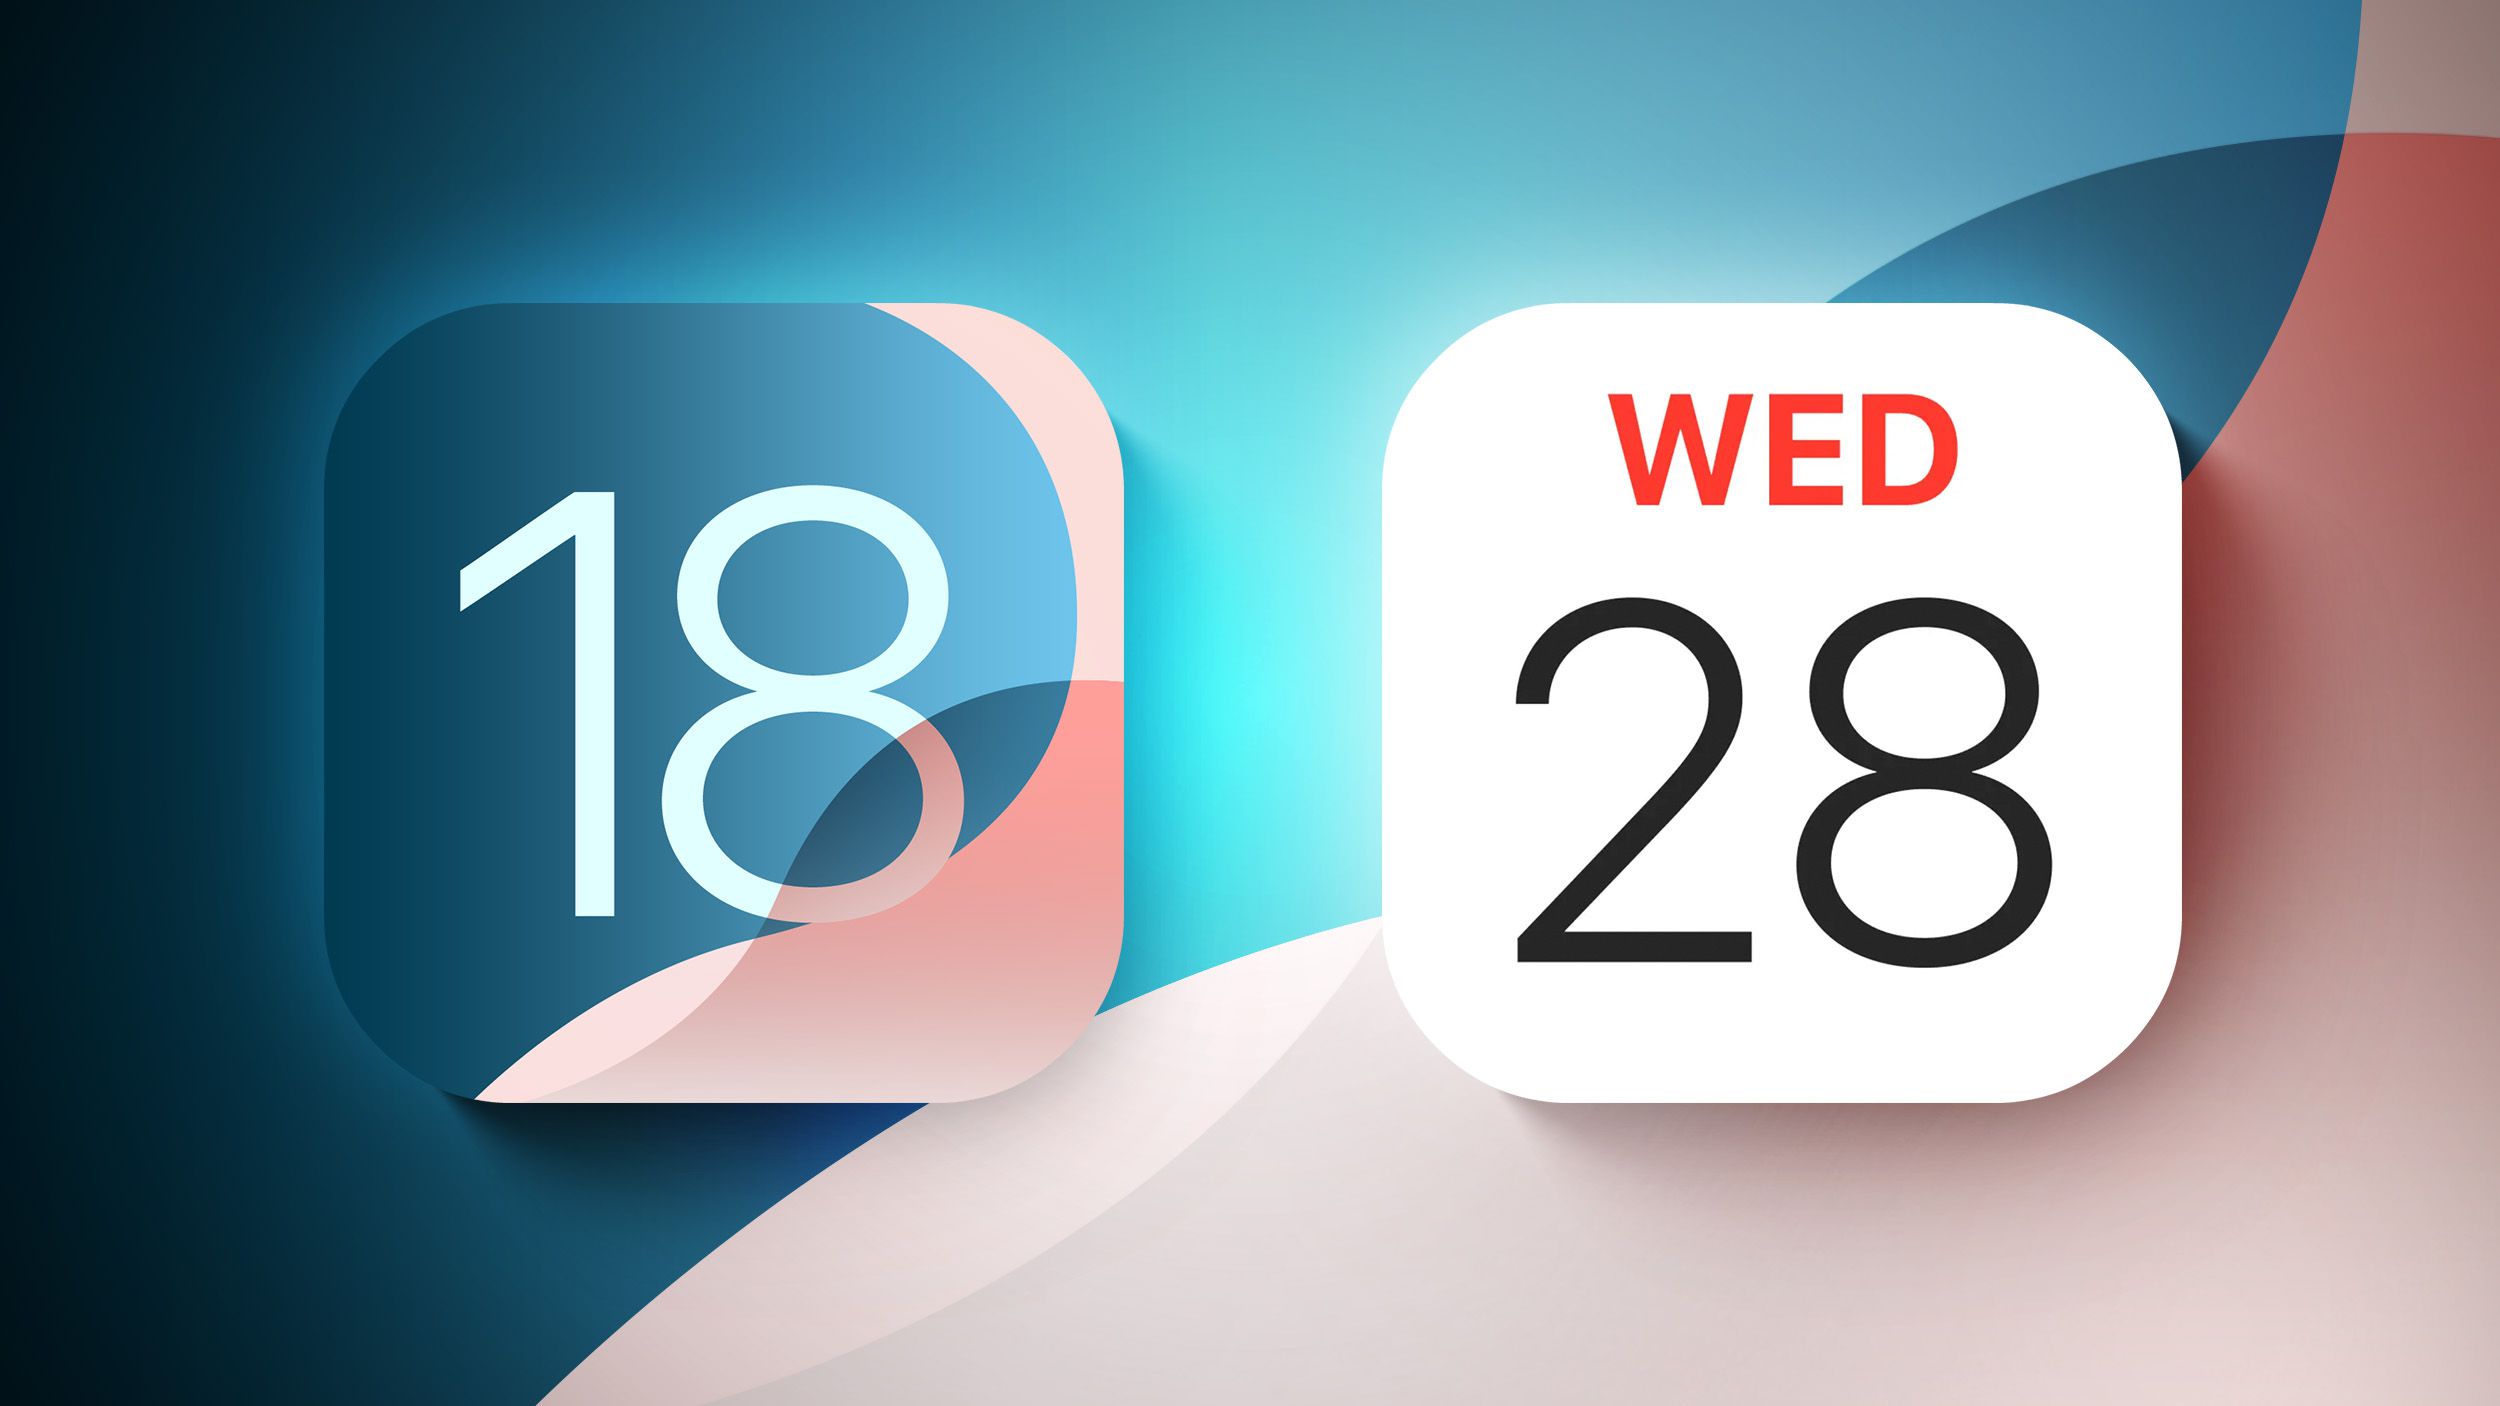 iOS 18: Cambios en el diseño de la aplicación Calendar e integración de recordatorios – Título SEO: Novedades en la app Calendario de iOS 18 y su integración con Recordatorios